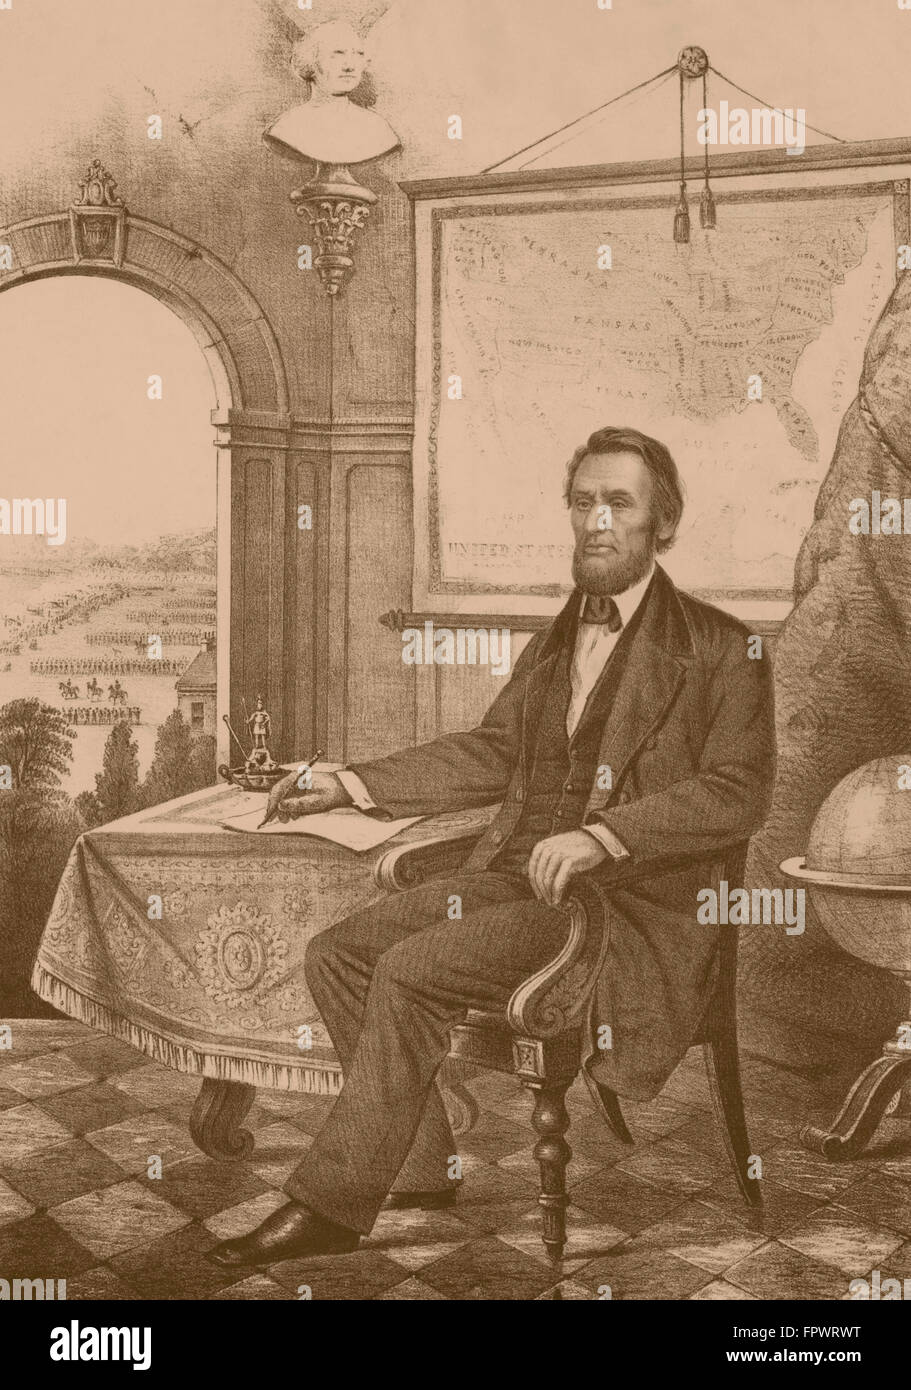 Guerre civile Vintage print du président Abraham Lincoln, et assis dans son bureau de travail. Troupes peuvent être vus à travers la fenêtre. Banque D'Images